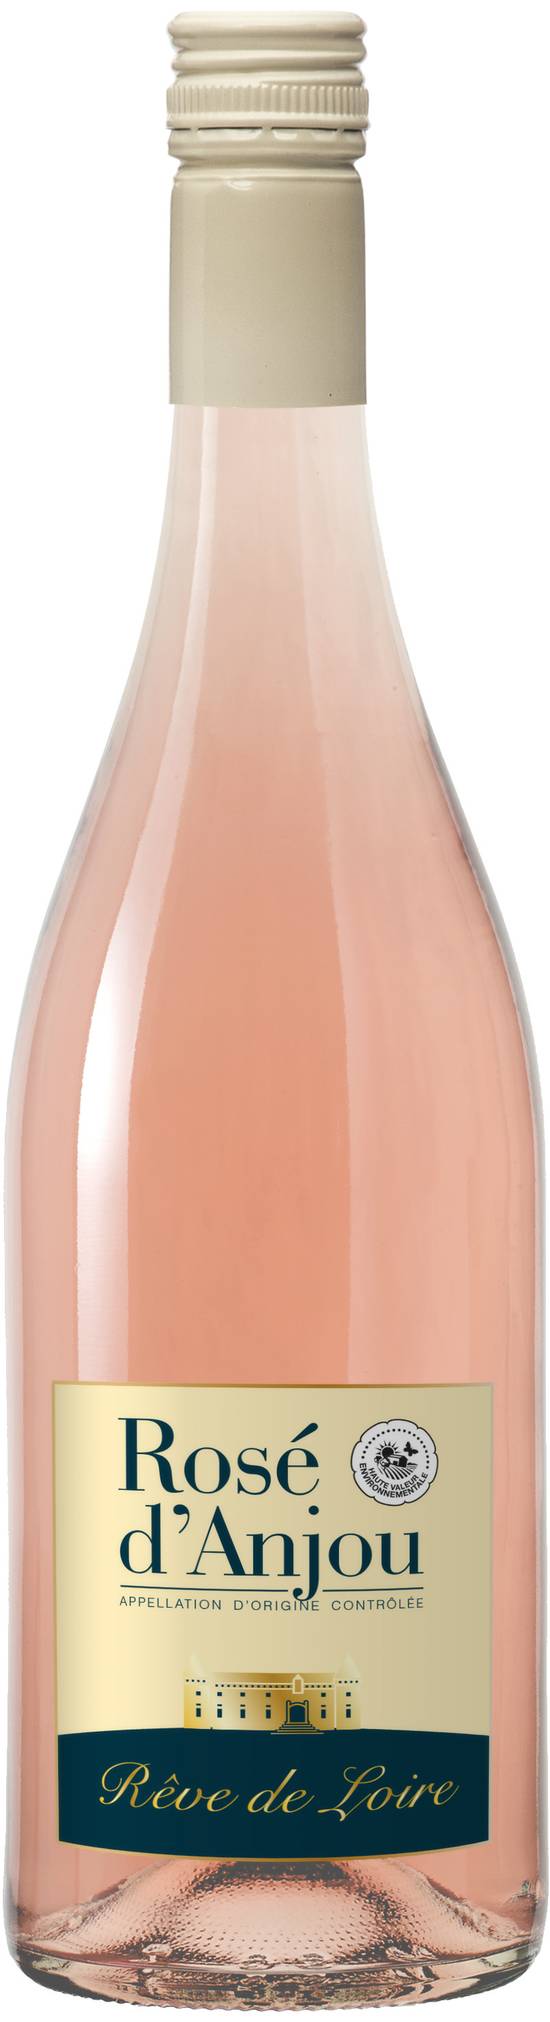 Reve de Loire - Vin rosé d'anjou (75 ml)